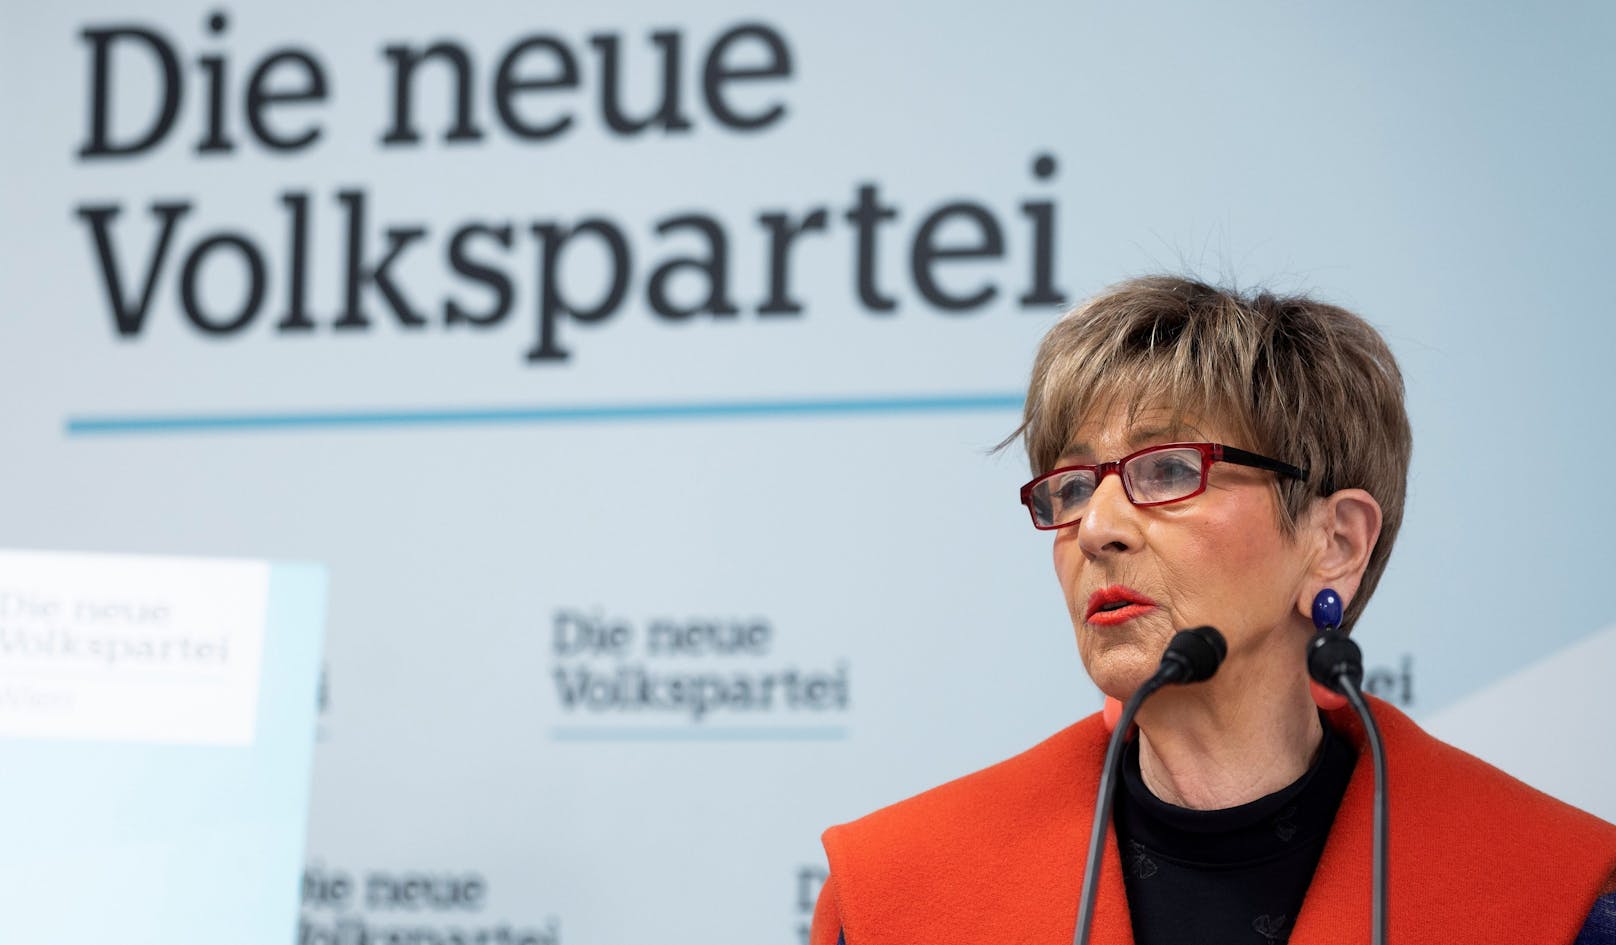 ÖVP lässt Wiens Spitalskonzept von Rechnungshof prüfen